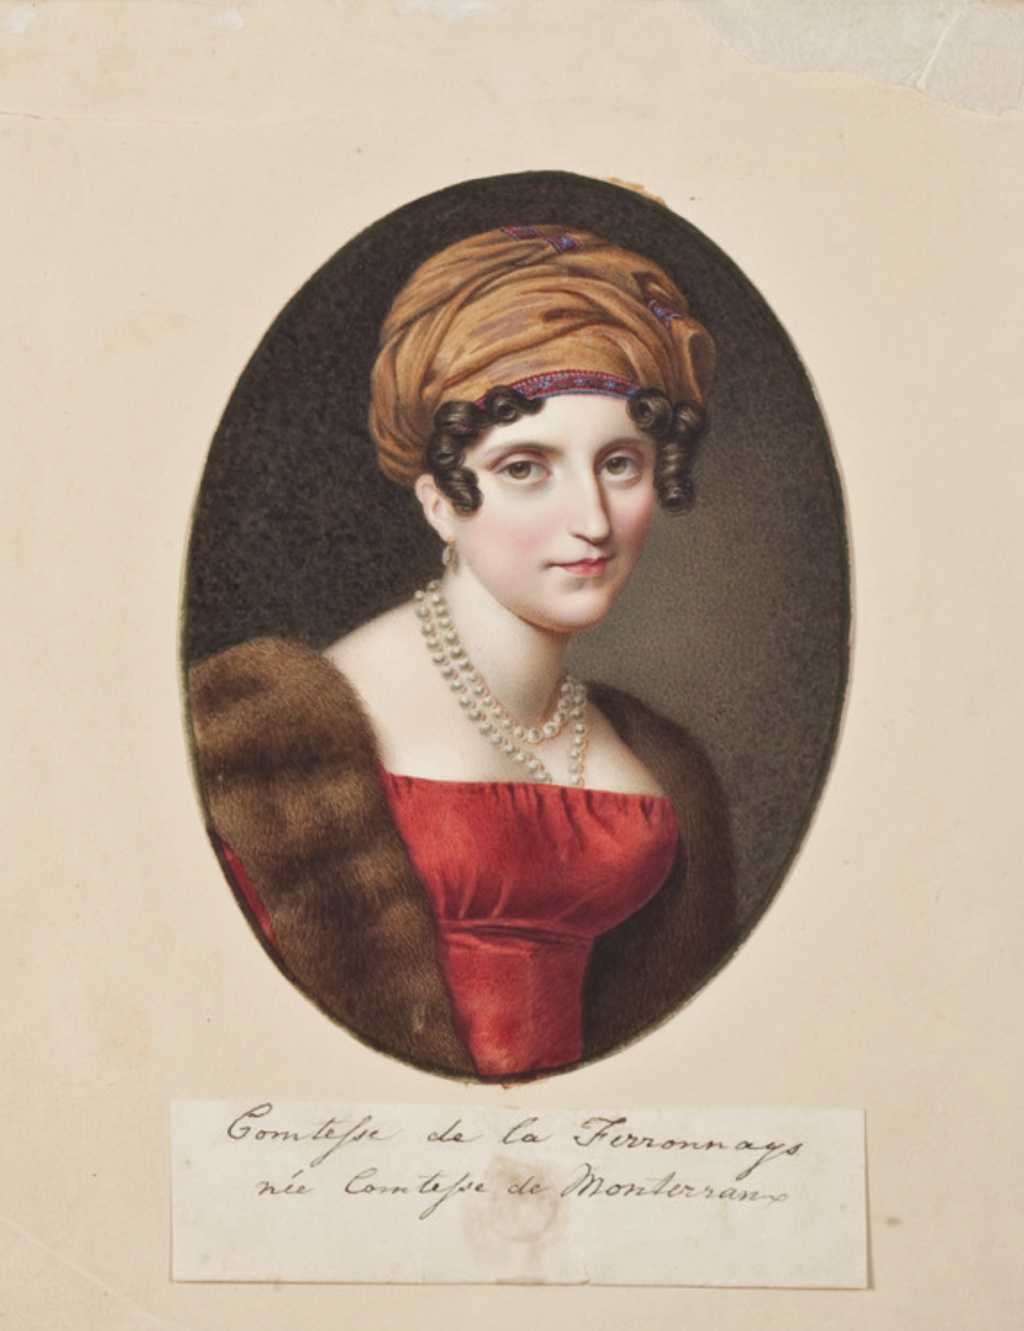 Mémoires de la comtesse de La Ferronays : (1791-1816). De Albertine du Bouchet de Sourches de Montsoreau  Capt5075